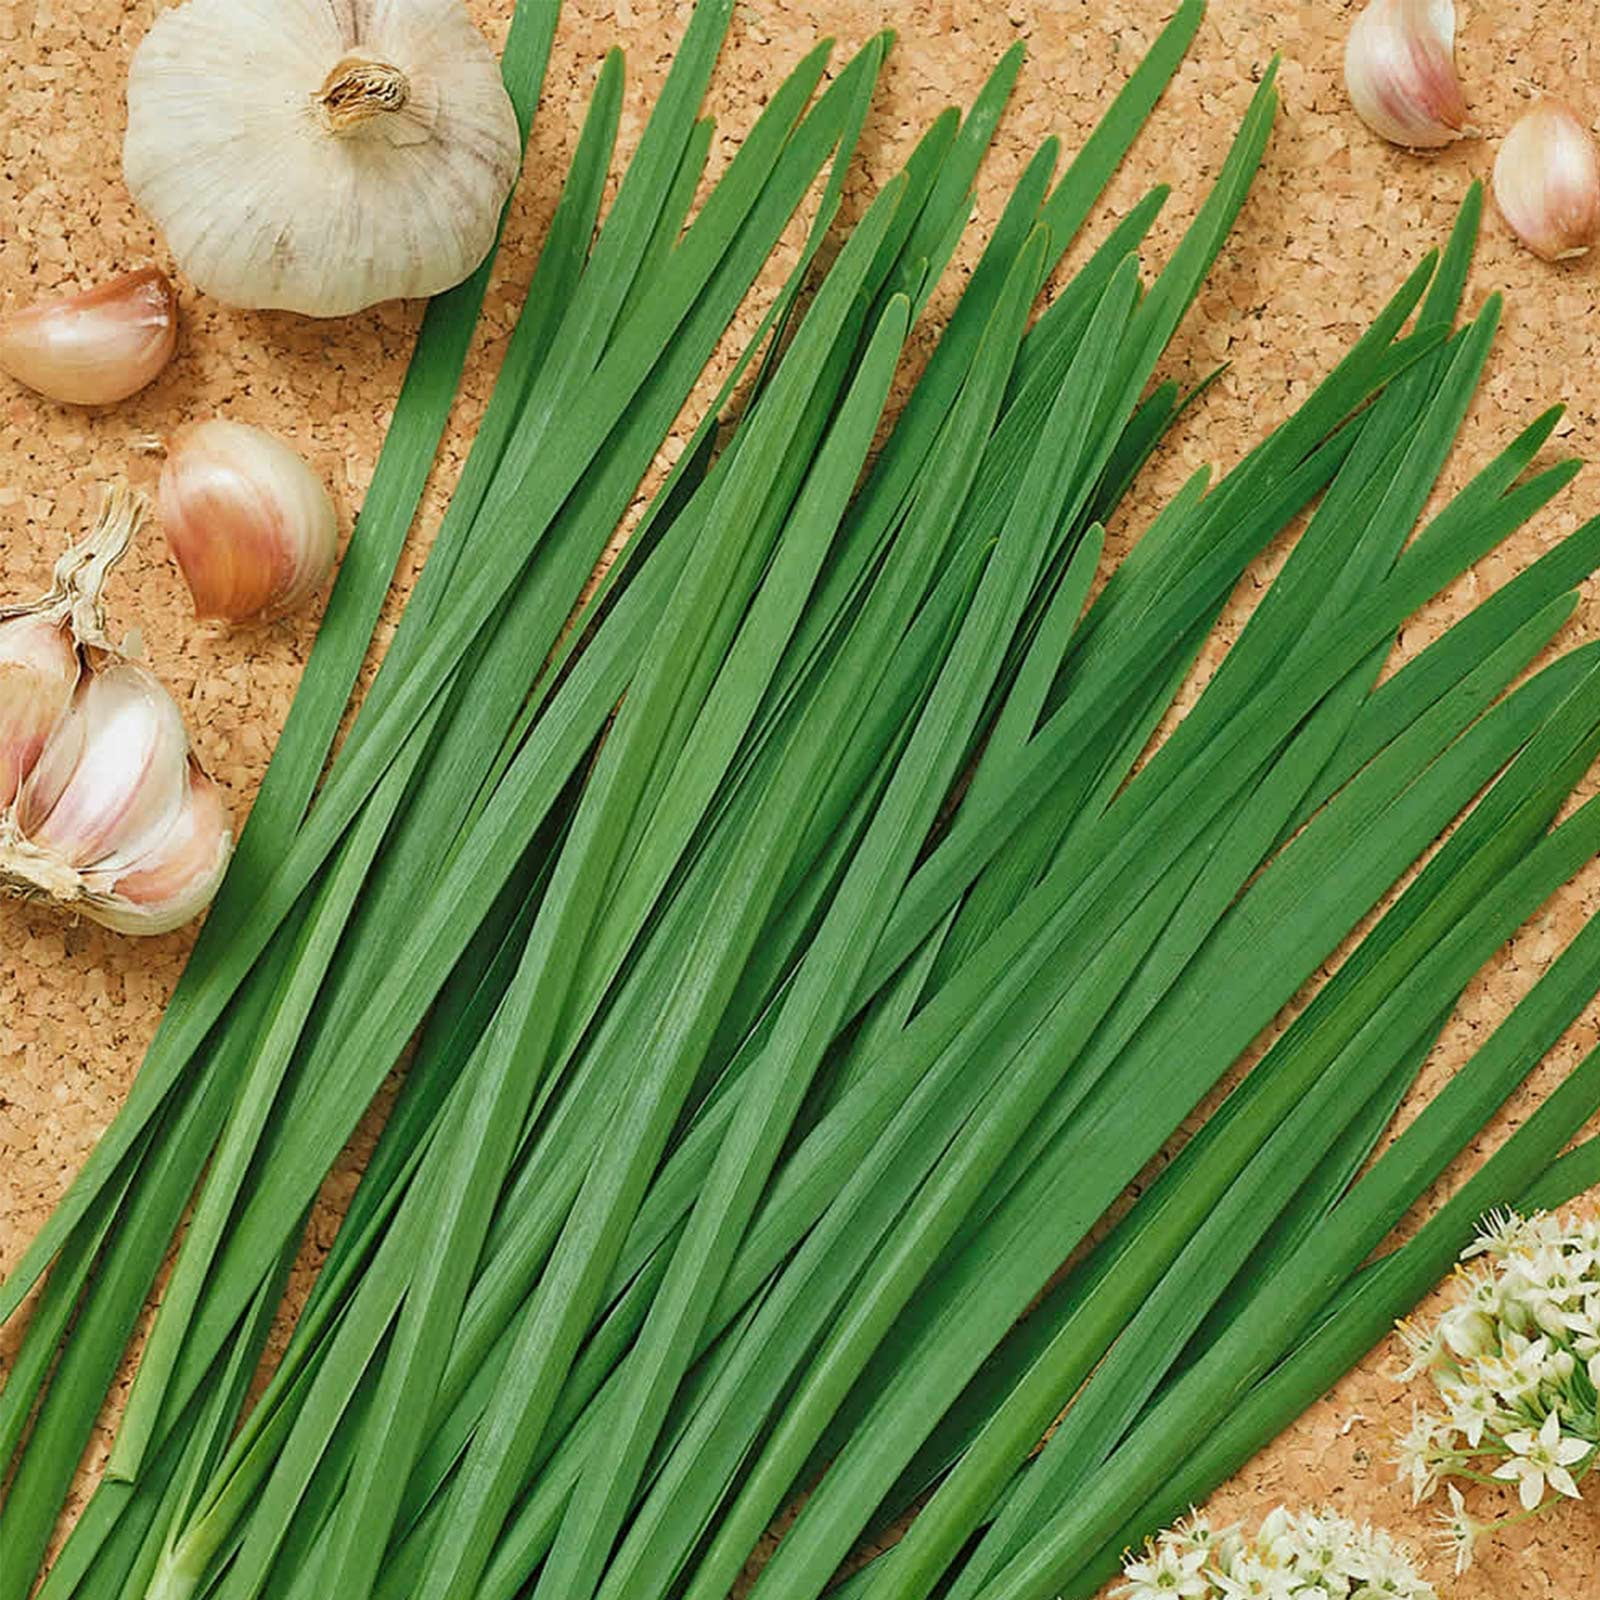 Garlic Chives Herb Garden Seeds - 2 g Packet ~500 Seeds - Non-GMO, Organic Perennial Herbal Gardening & Microgreens Seed - Allium tuberosum